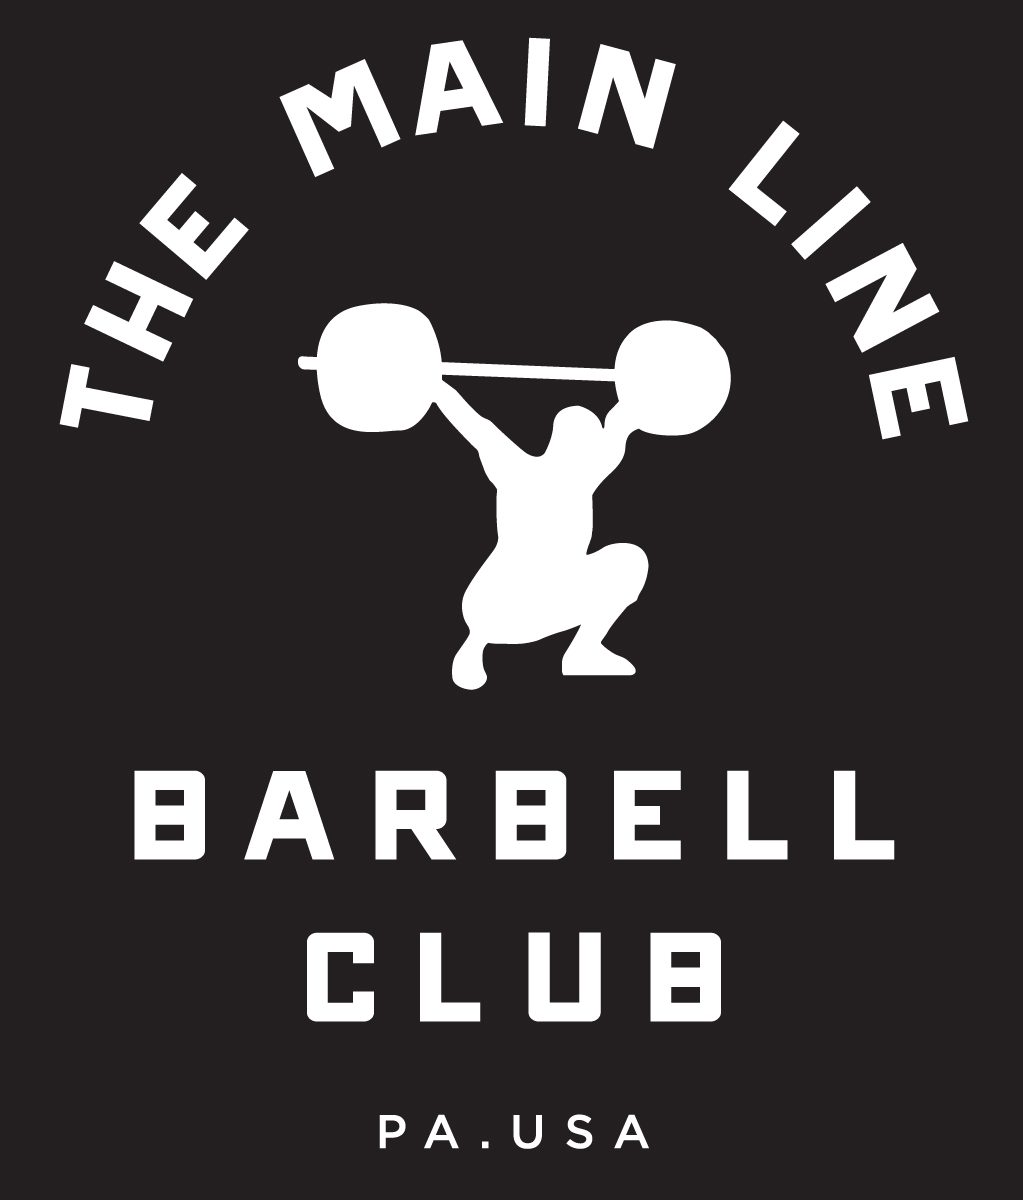 Week of 5.16.16 Barbell Club